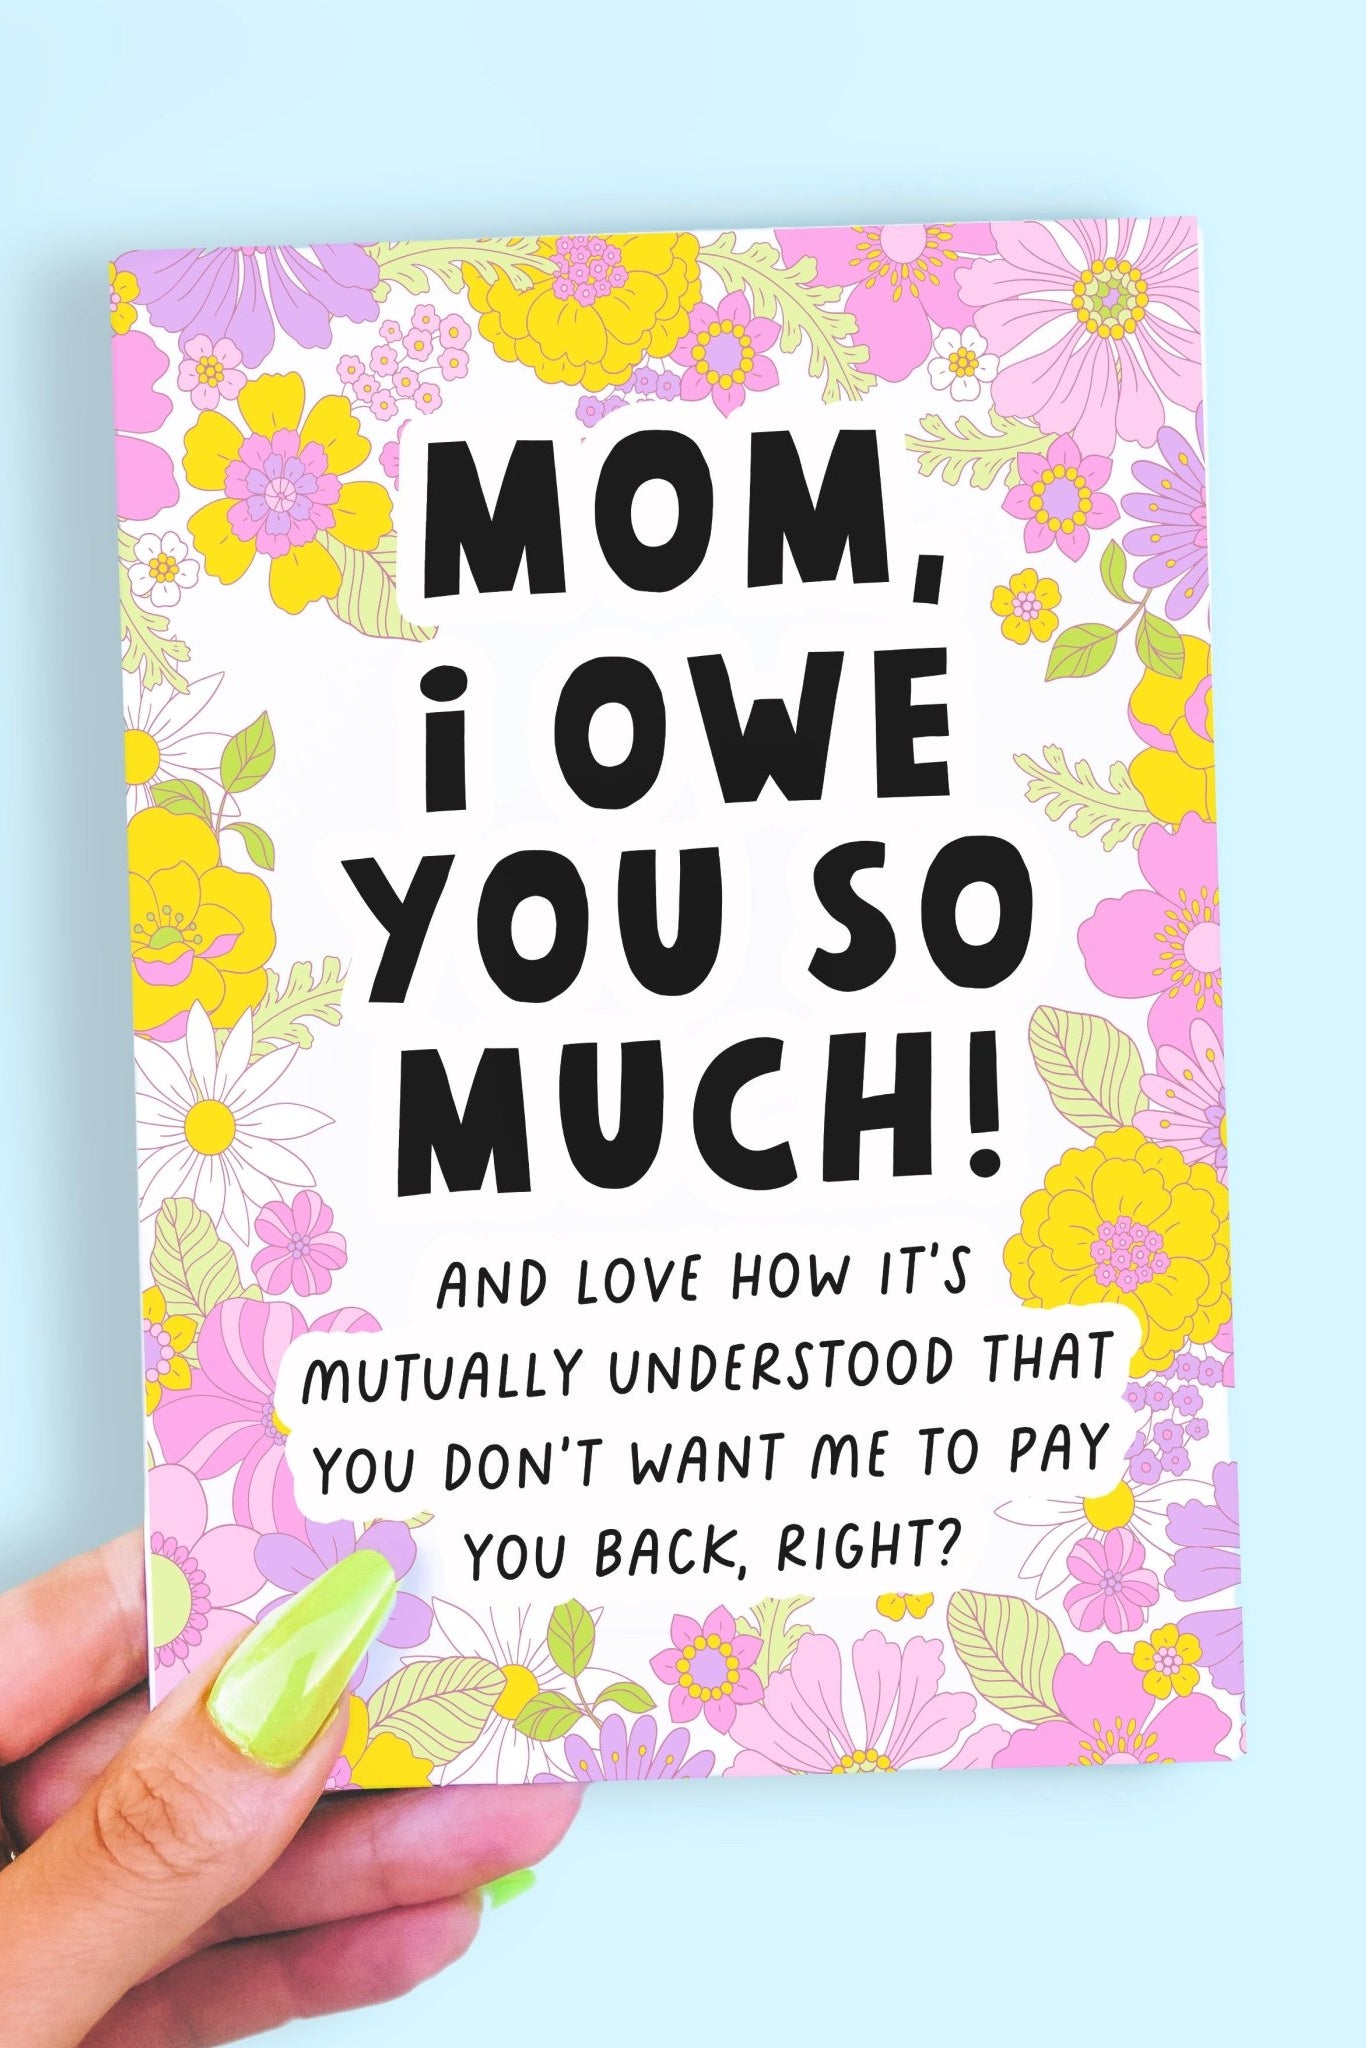 Mom I Owe You So Much Funny Mother's Day Card - UntamedEgo LLC.